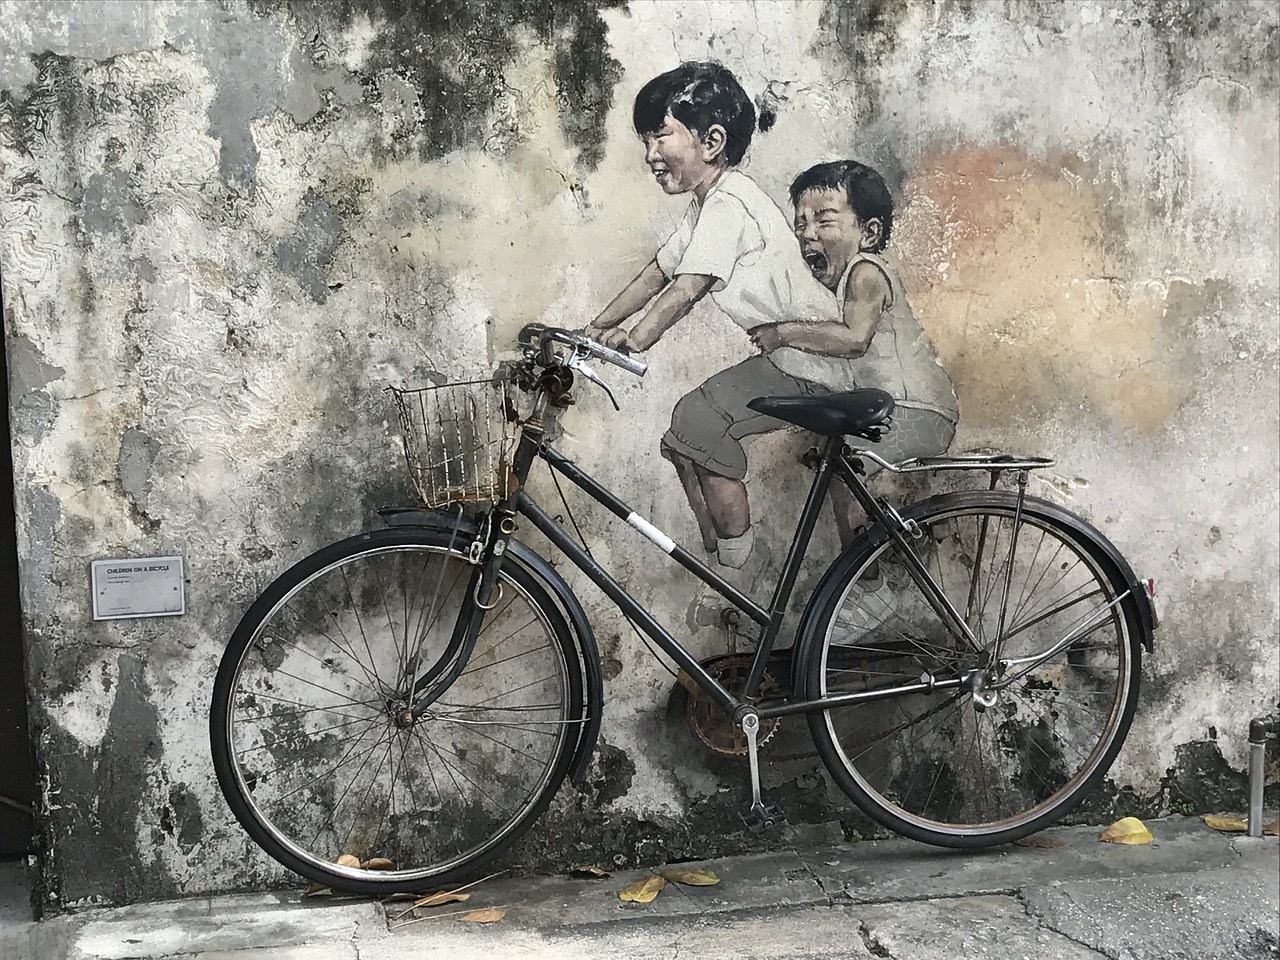 penang street art malaysia free photo